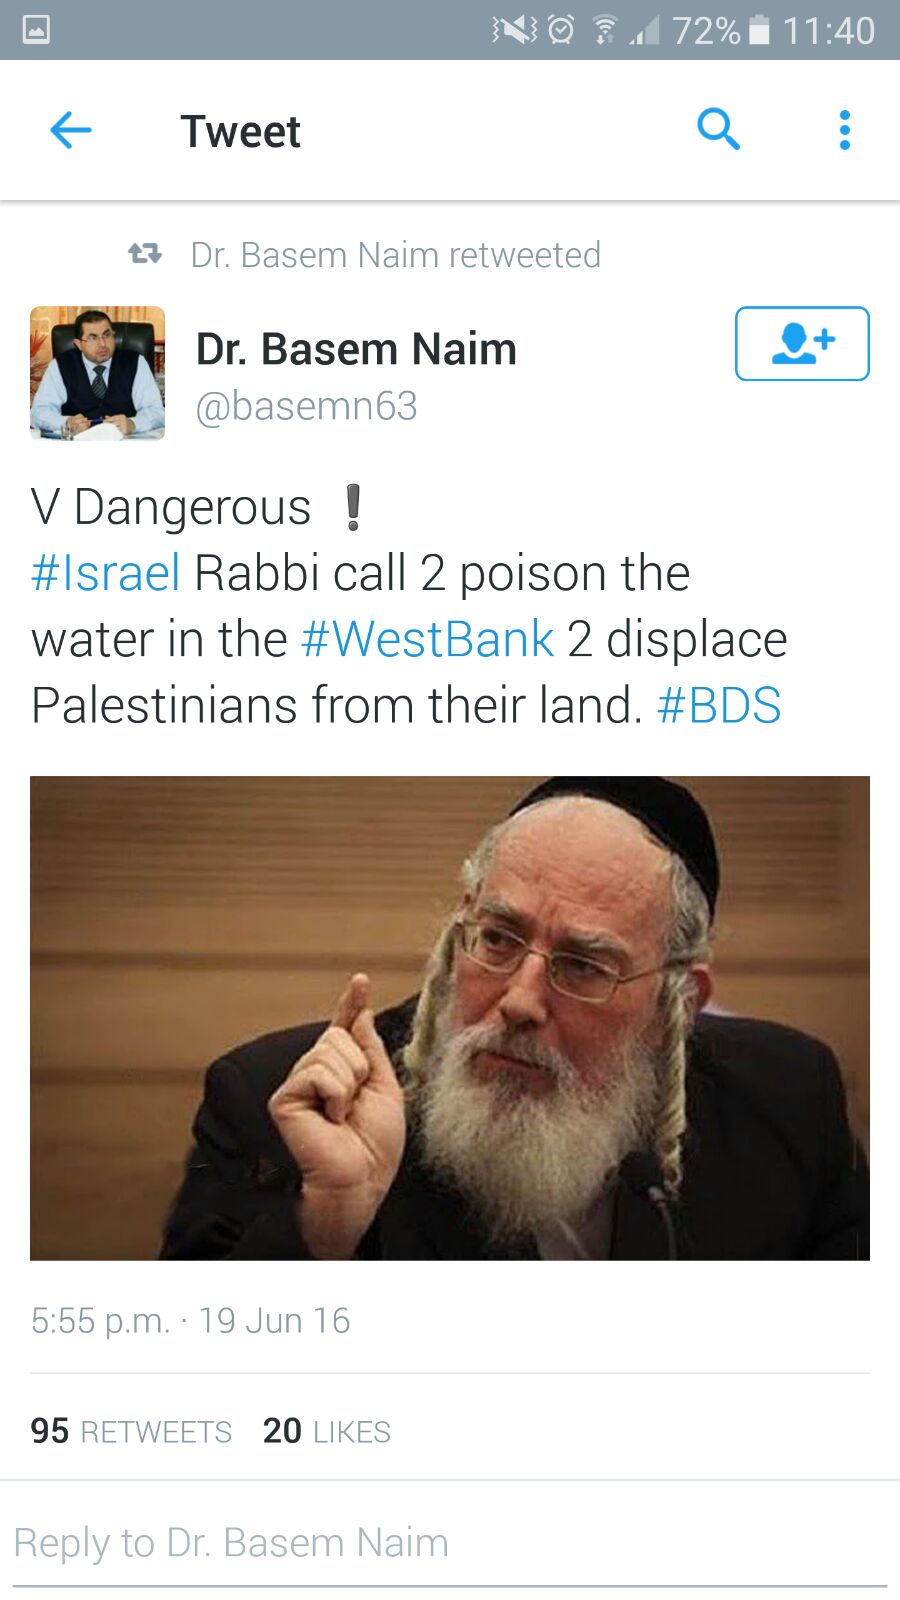 שר הבריאות לשעבר מטעם חמאס האשים את אייכלר בהרעלת מי השתייה של הפלסטינים